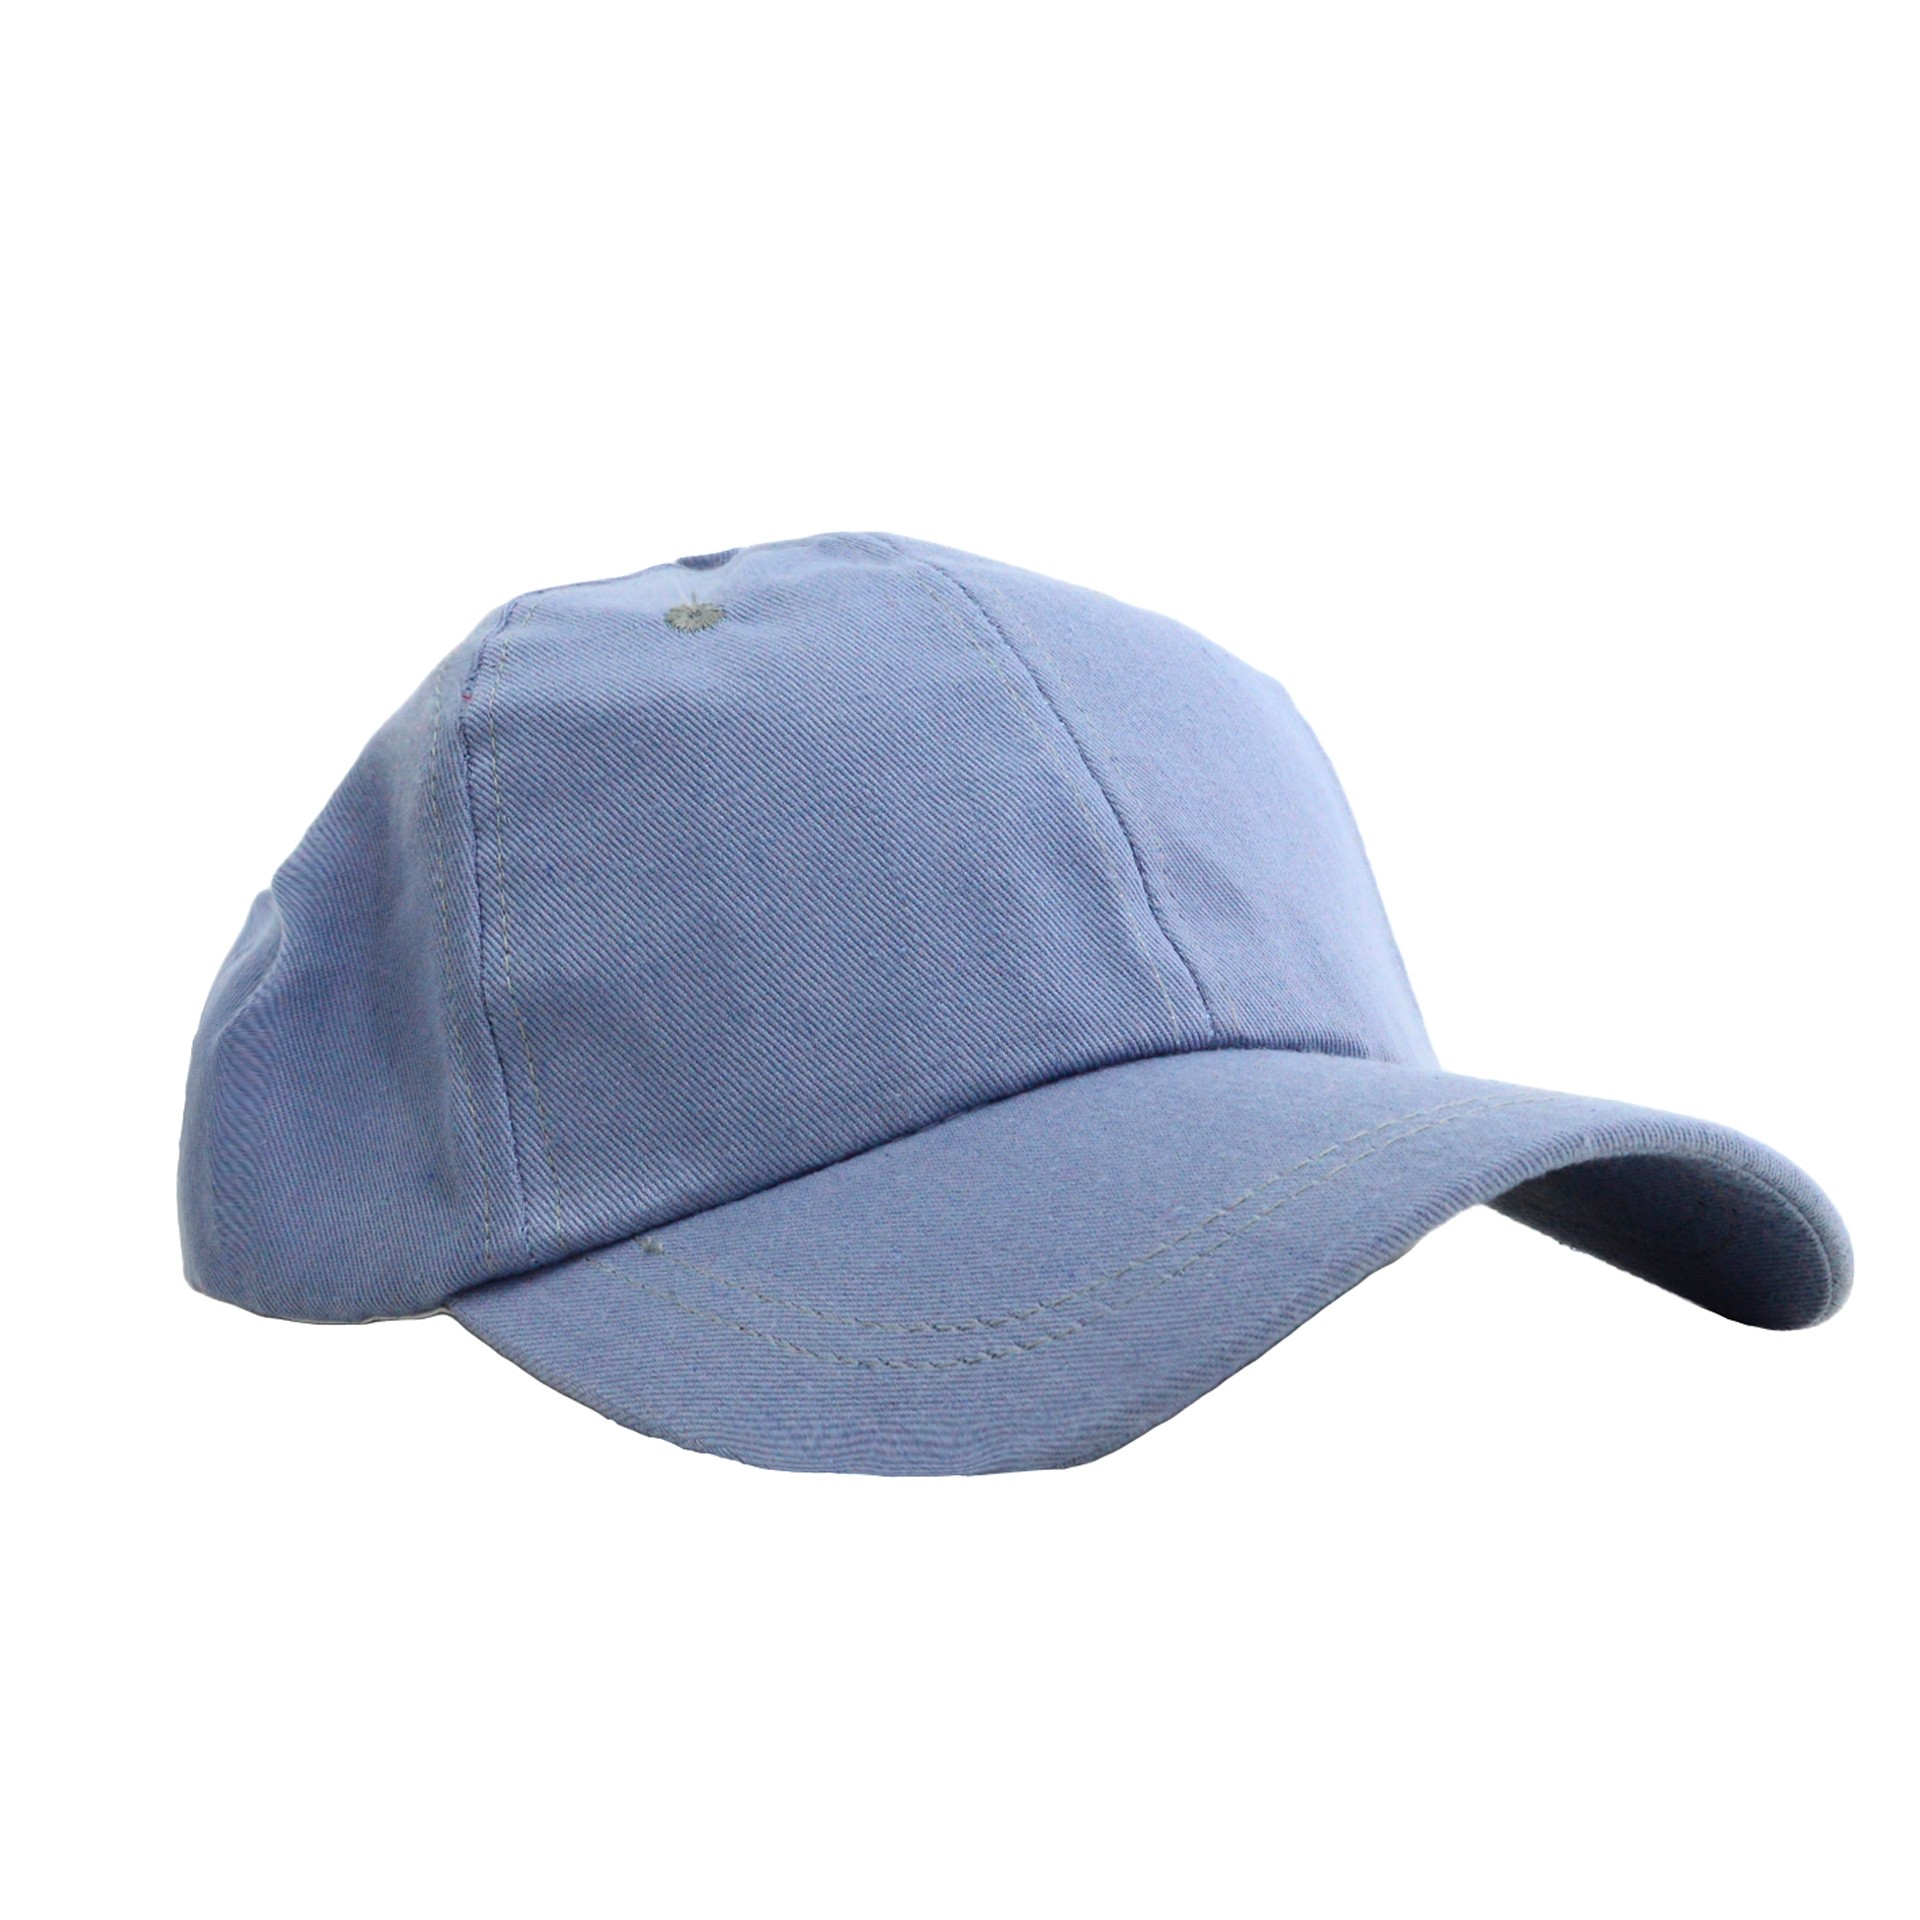 Ανδρικό καπέλο jockey γαλάζιο